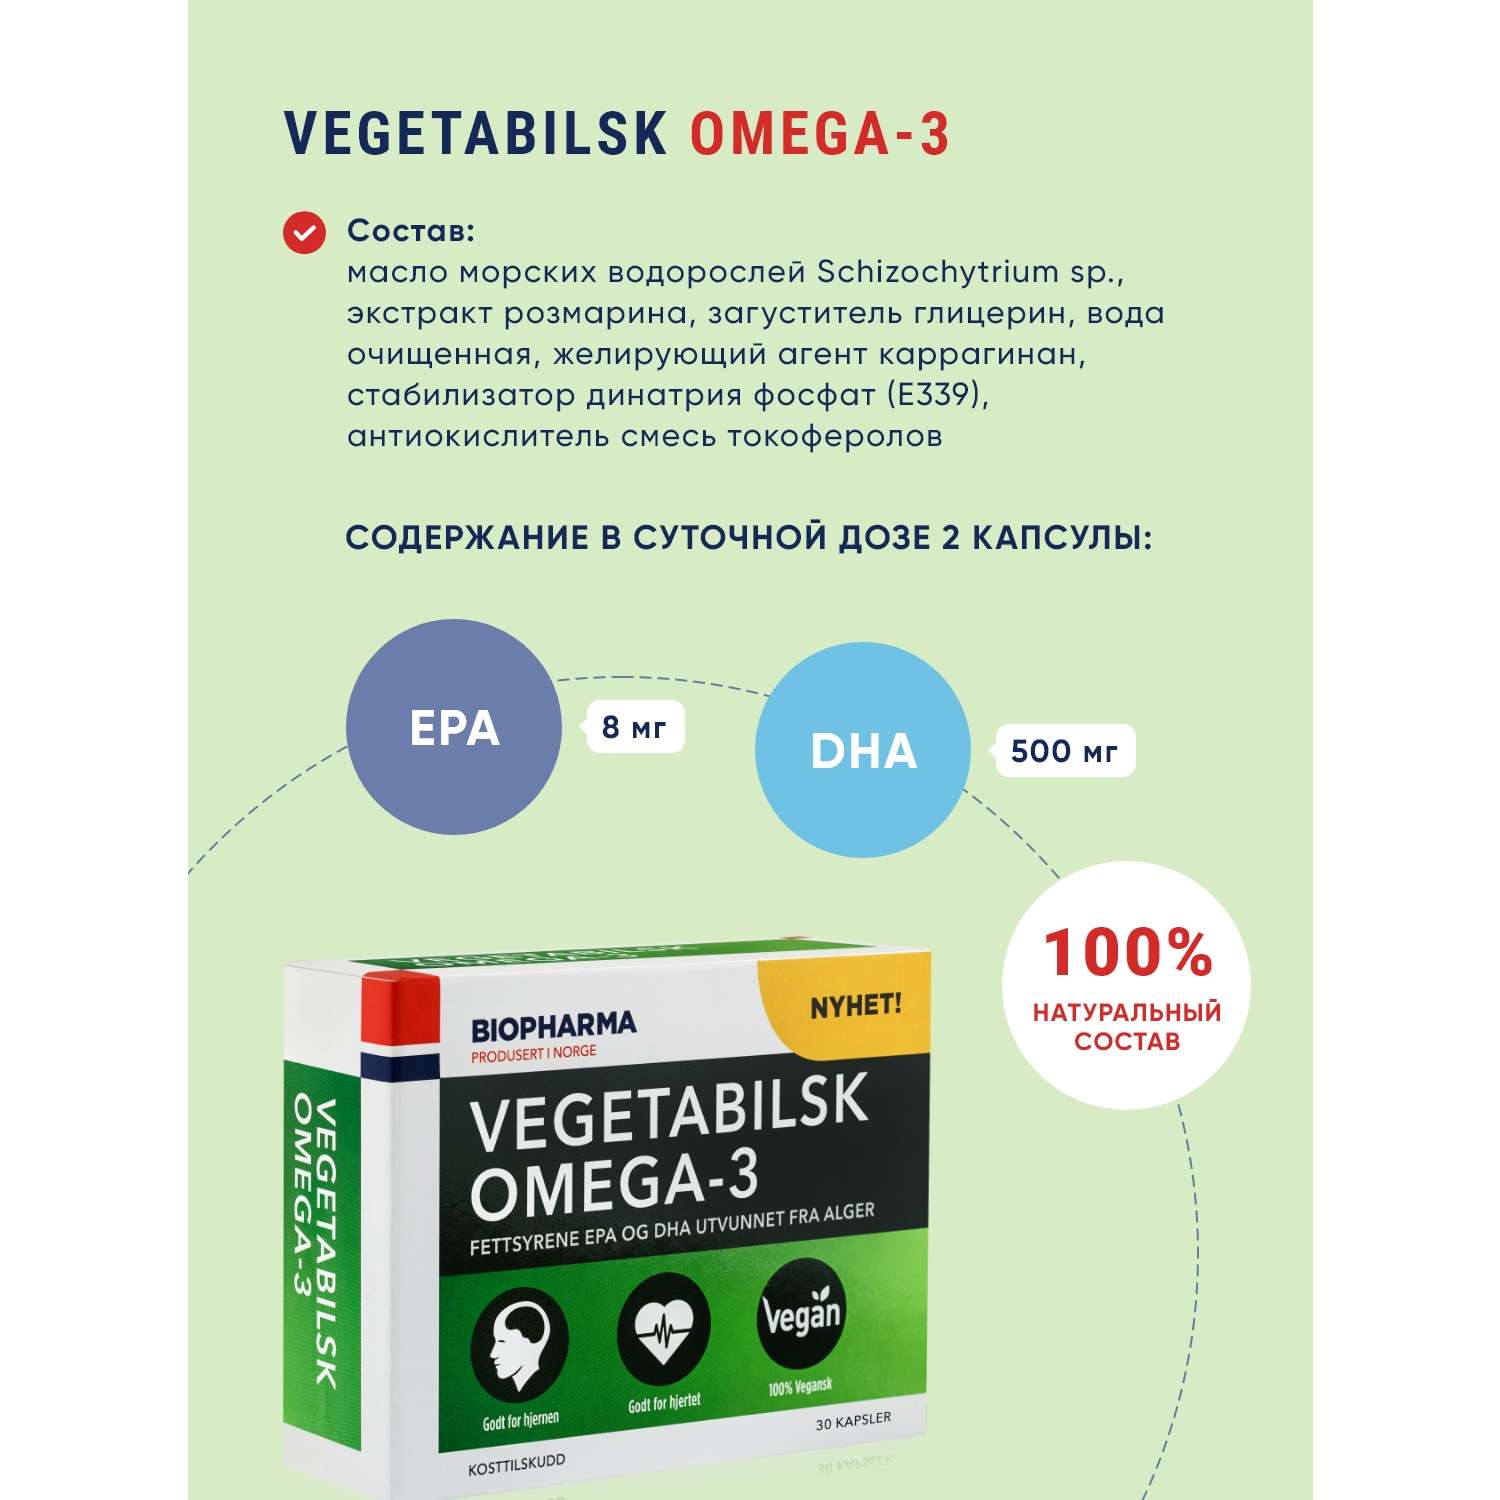 БАДы Biopharma Вегетарианская Омега 3 из водорослей Vegetabilsk Omega 3 - фото 3